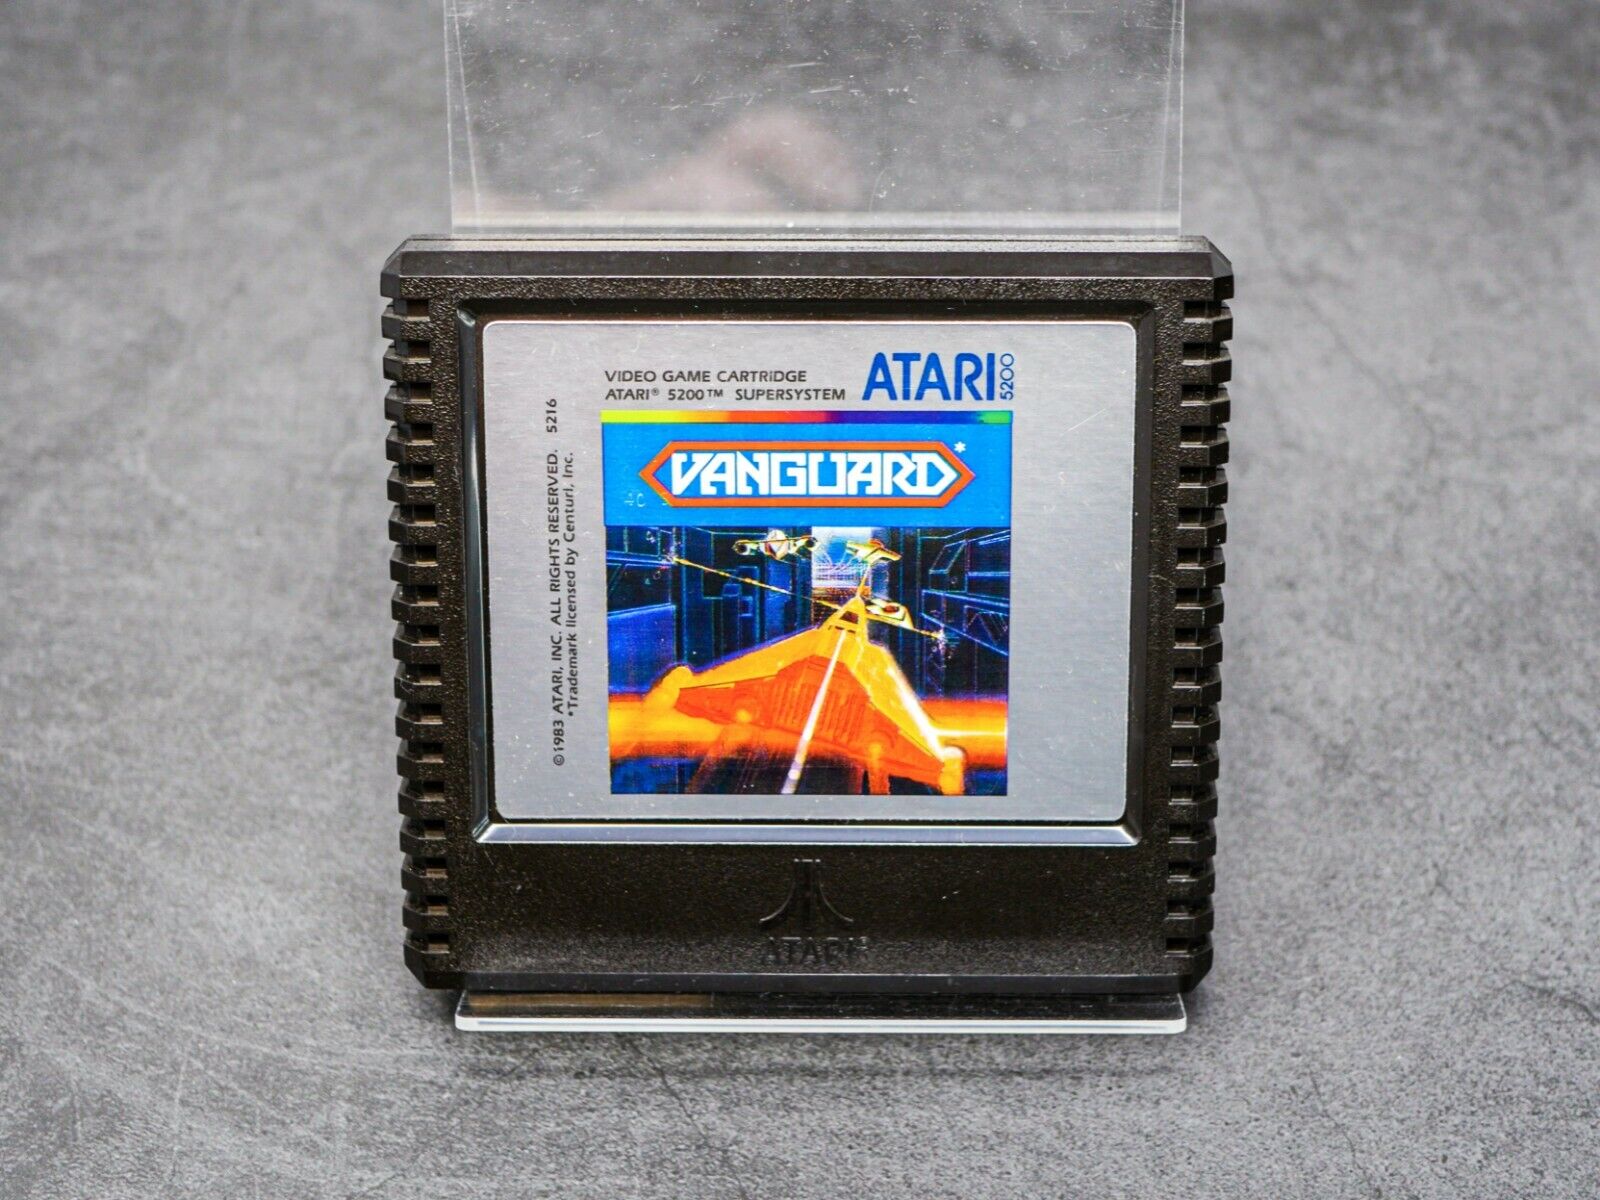 Vanguard (Atari 1984) for Atari 5200. 